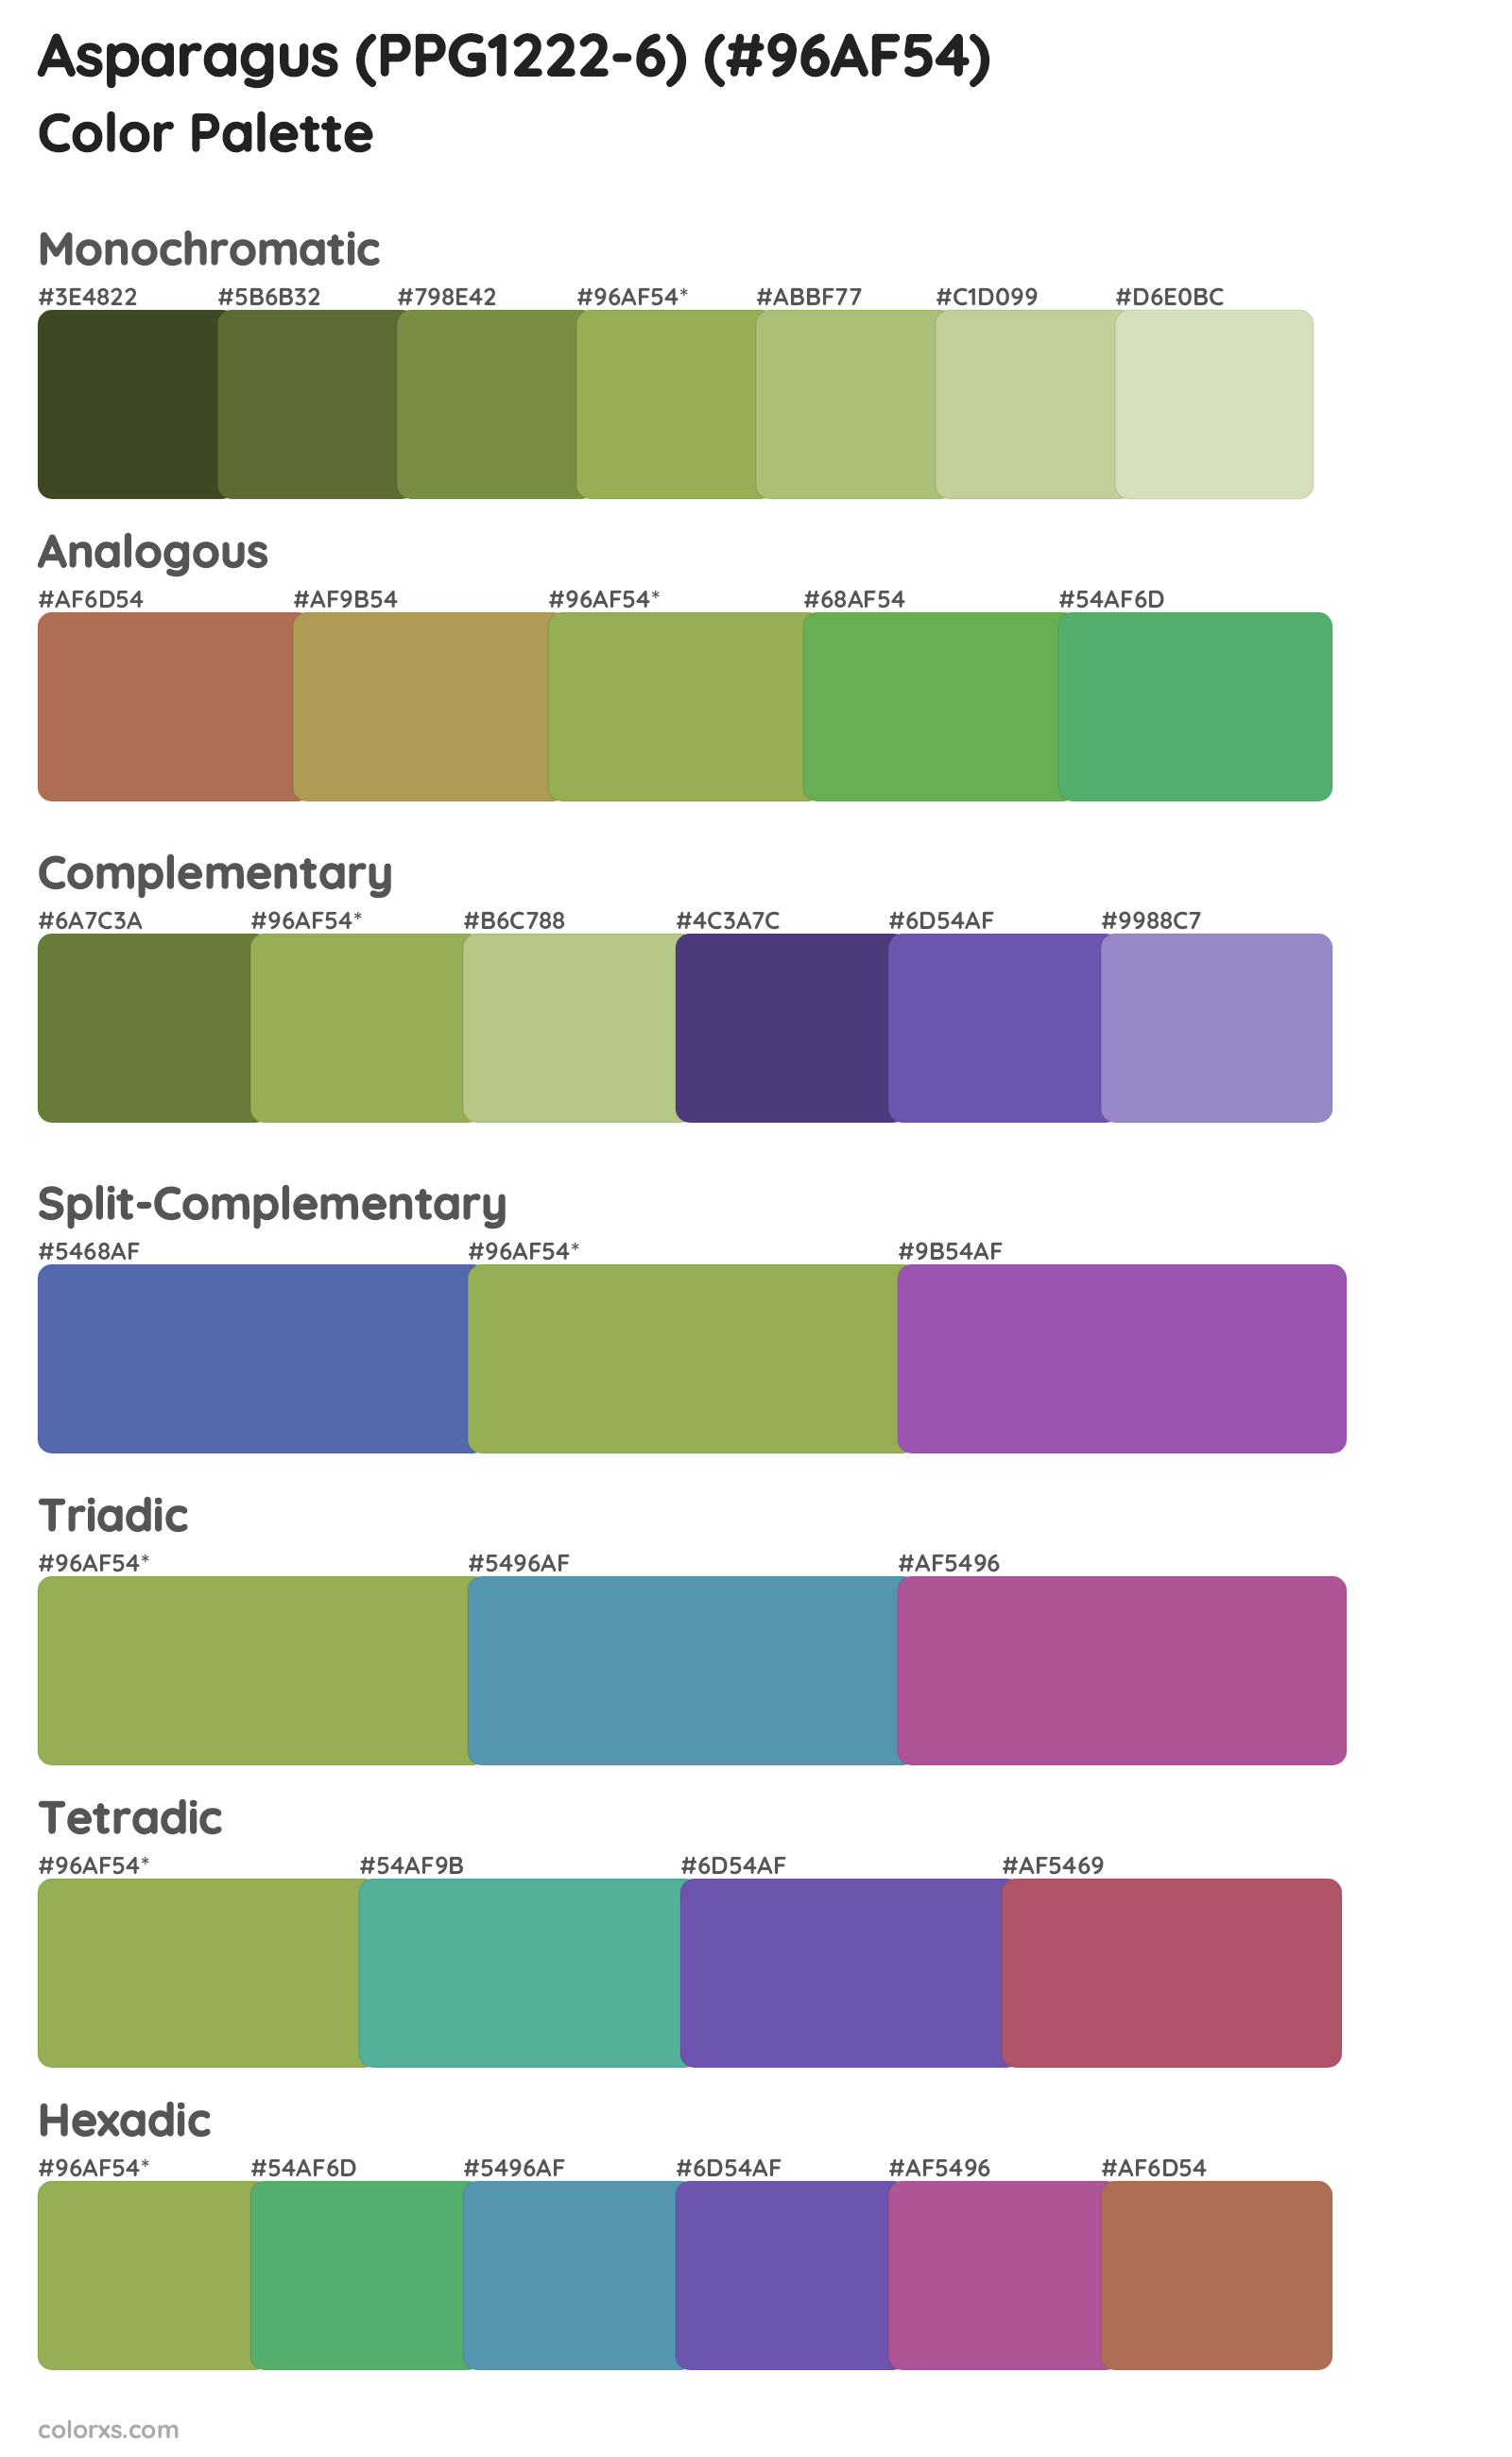 Asparagus (PPG1222-6) Color Scheme Palettes